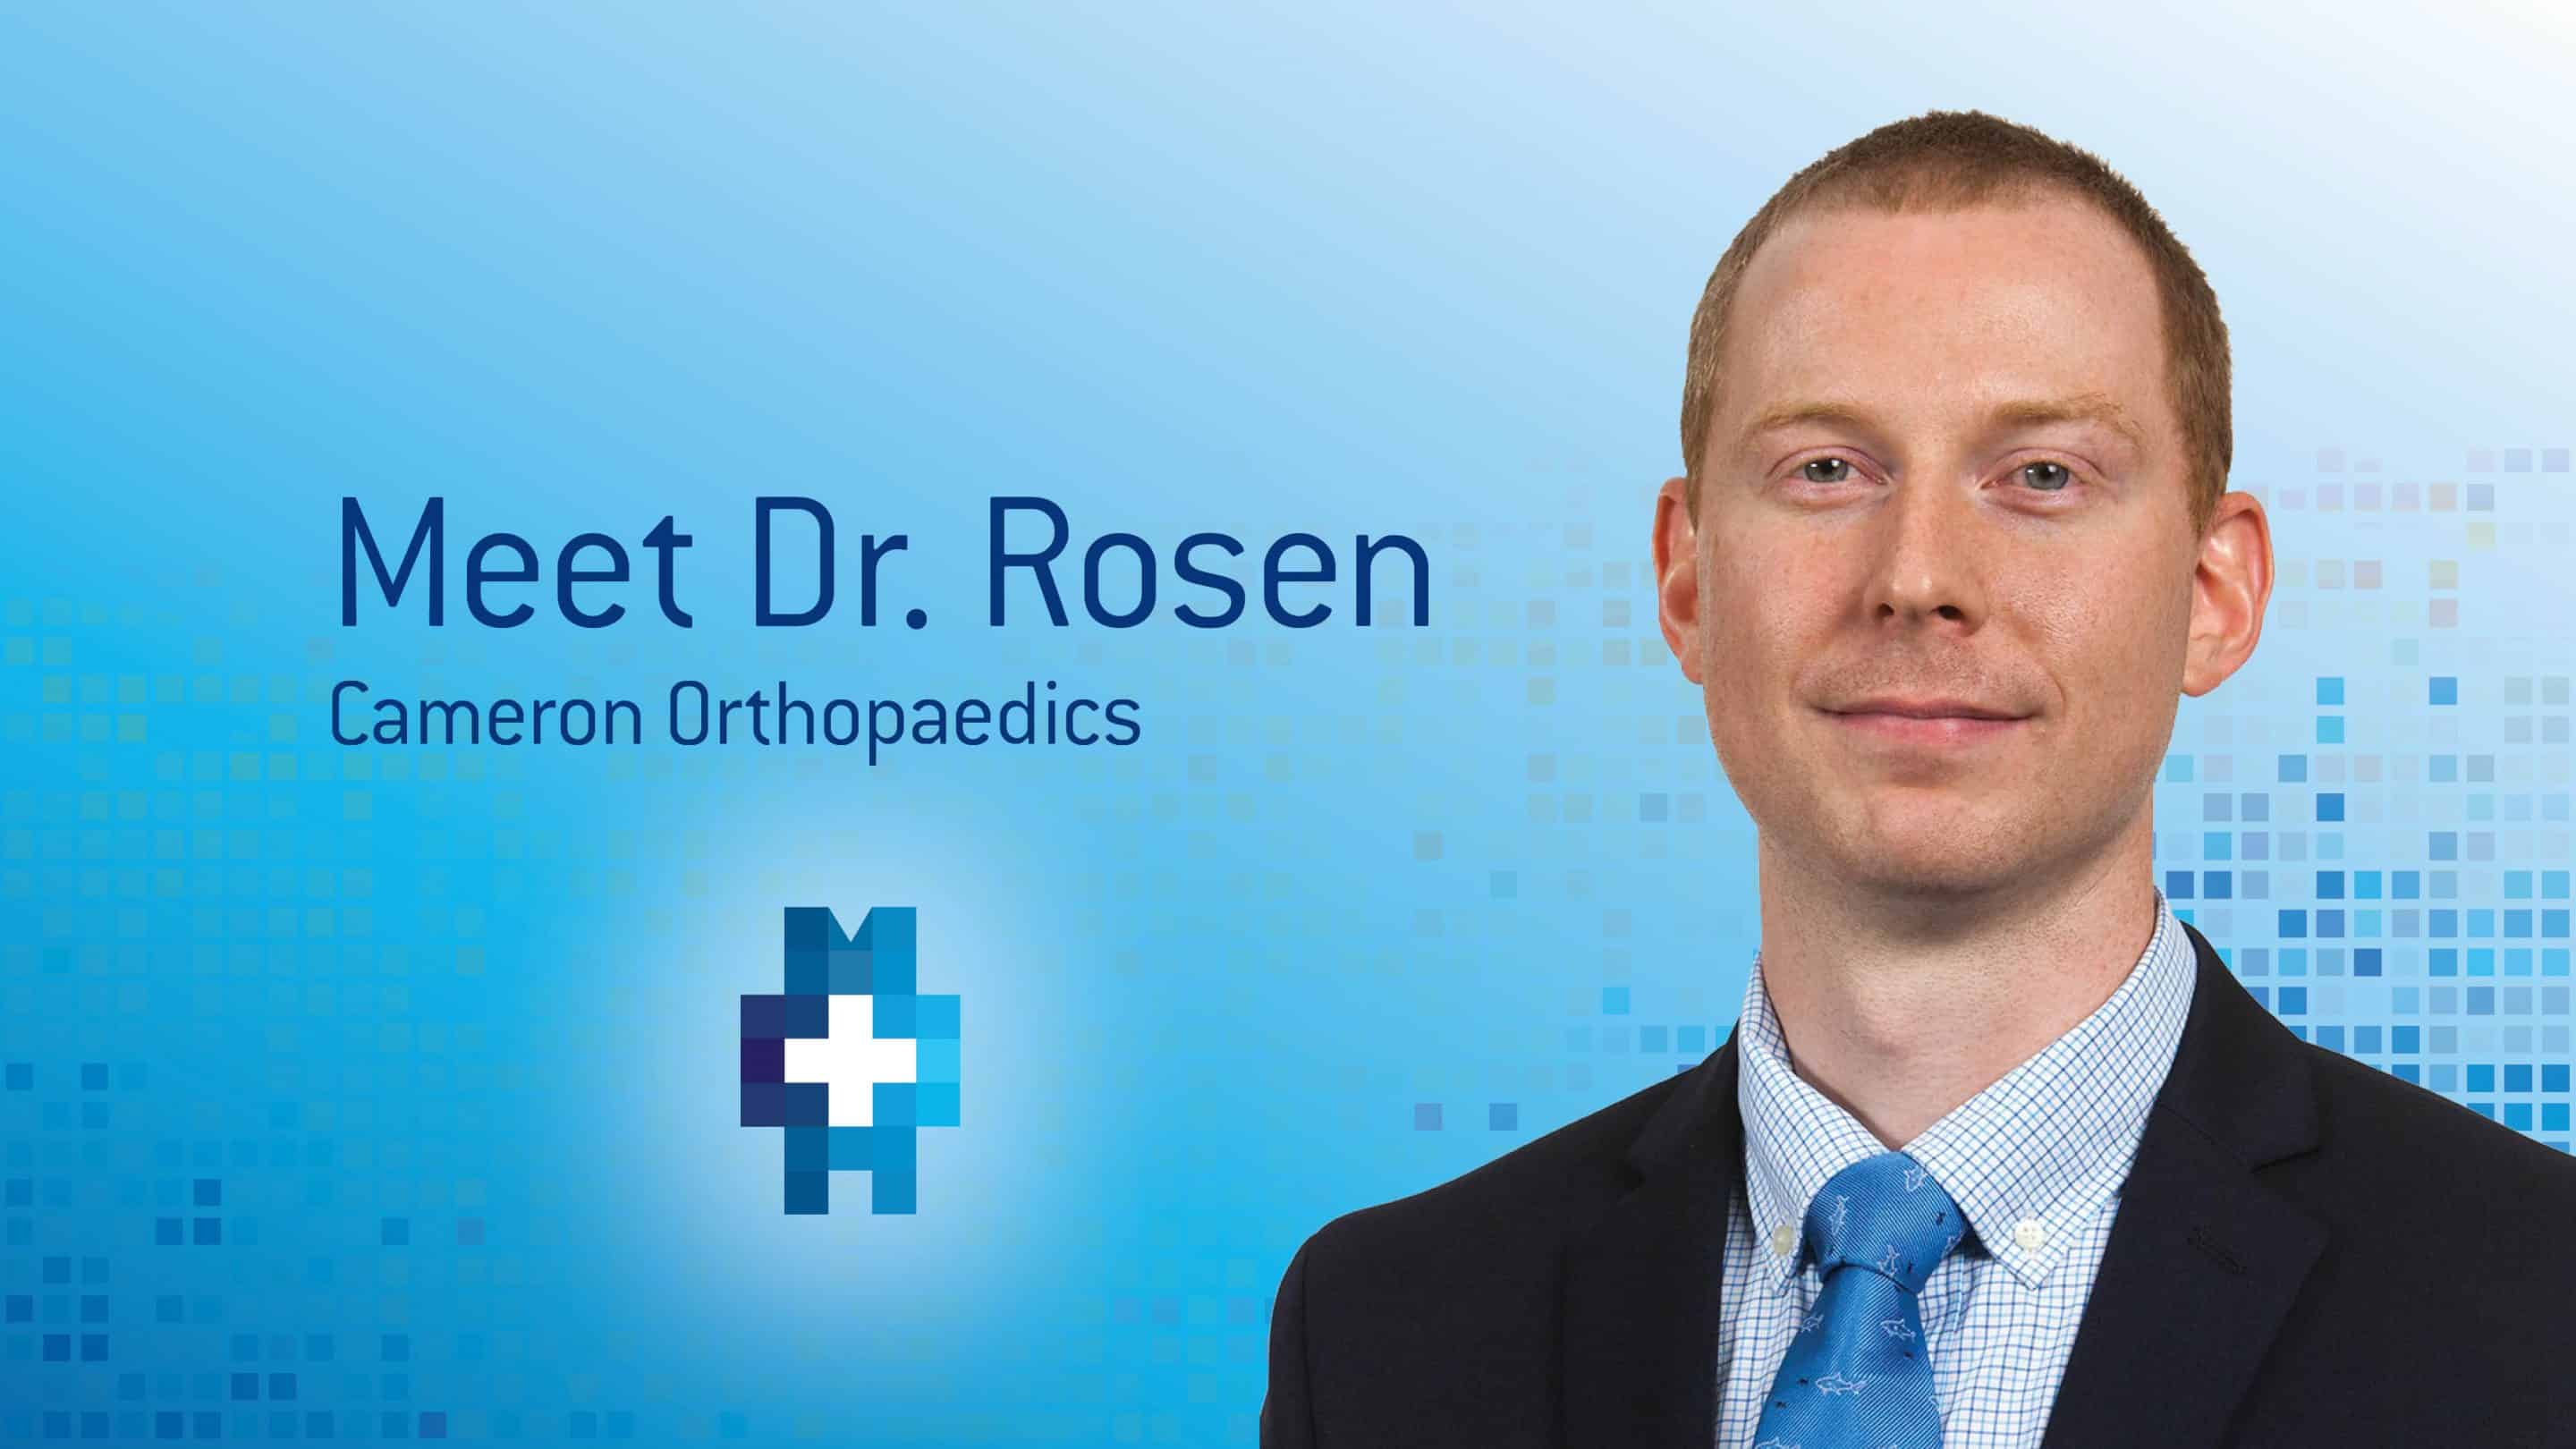 Meet Dr. Rosen, Orthopedic surgeon